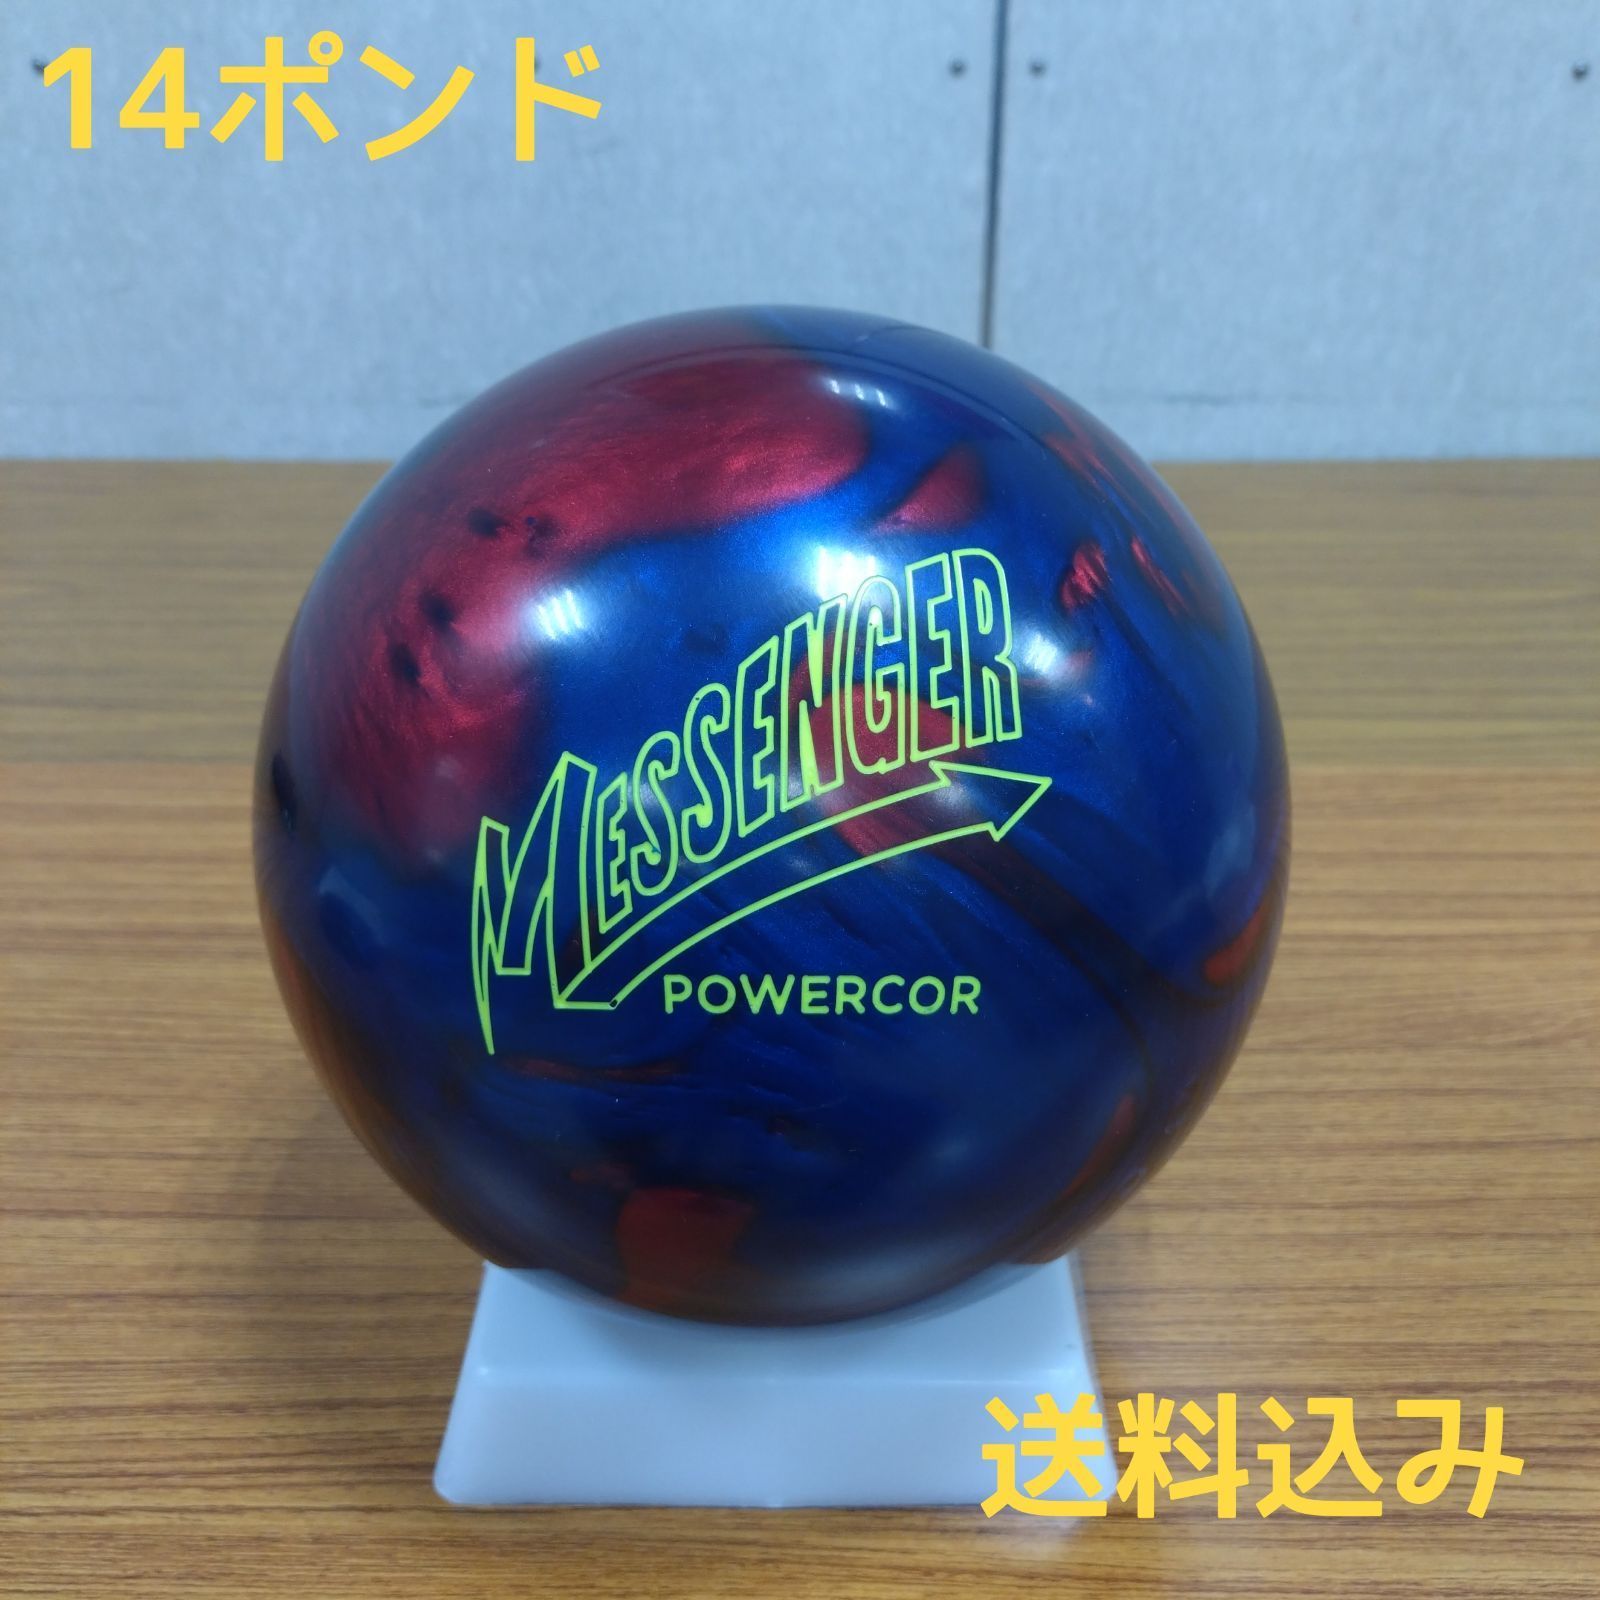 メッセンジャーパワーコアパール15ポンド 新しいスタイル - ボール